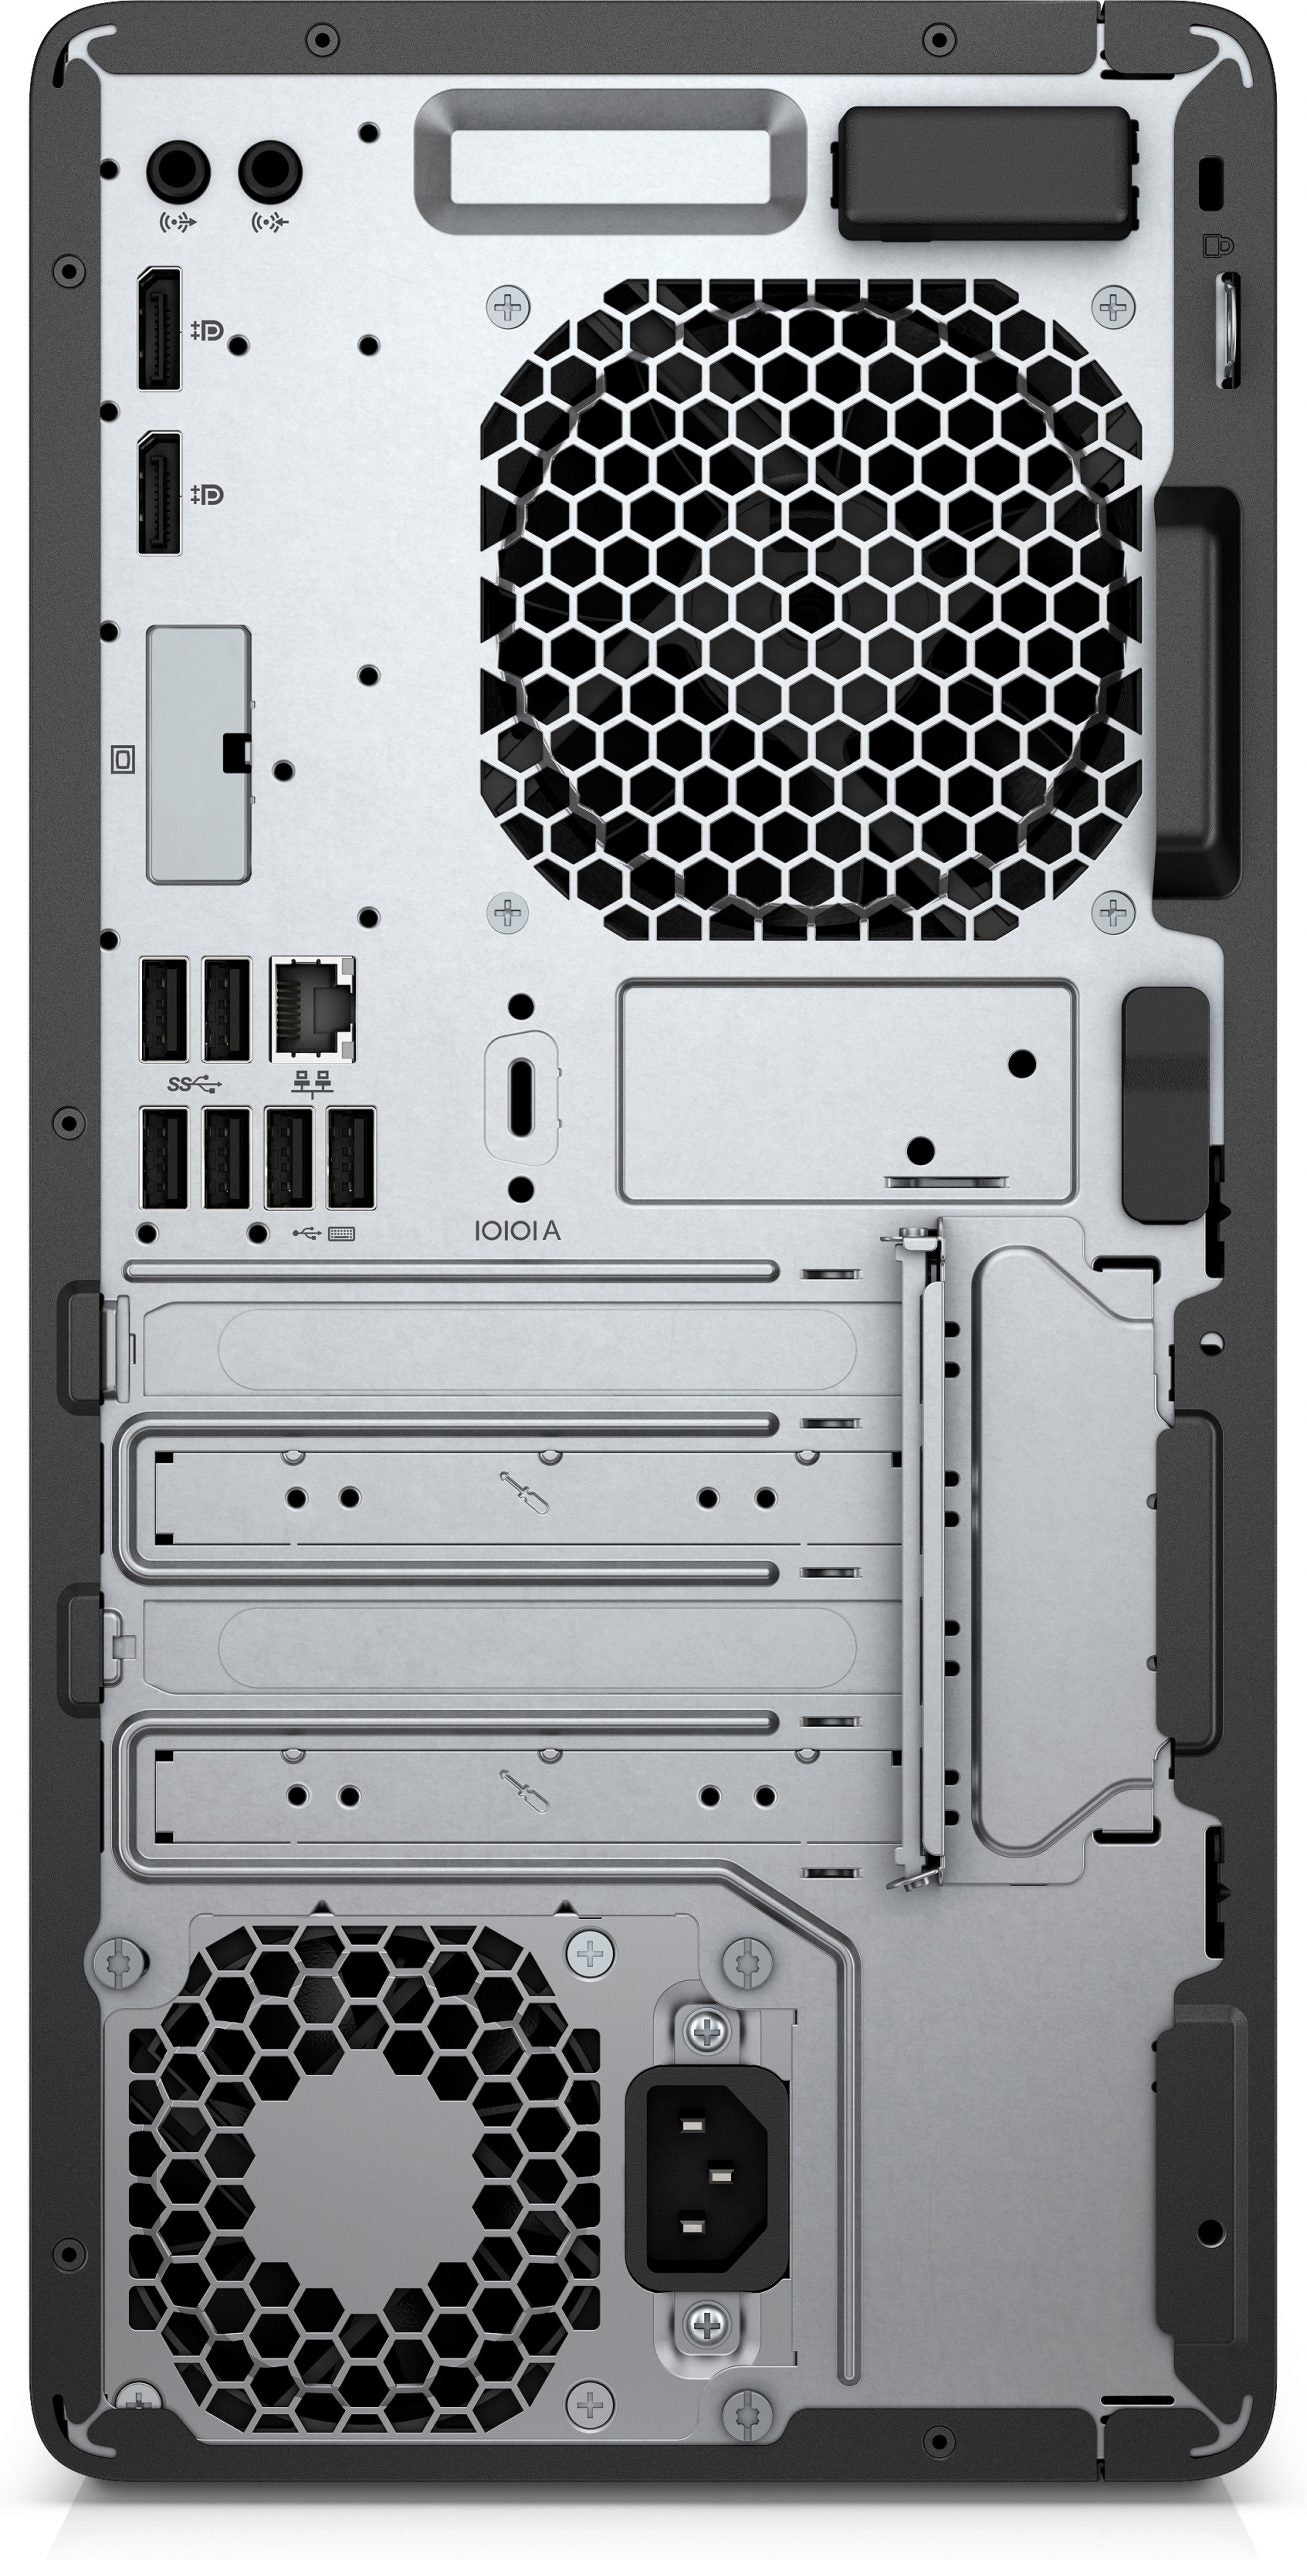 HP ProDesk 600 G4 Mini Tower Pc Refurbished | Intel Core i7-8700T 2.4Ghz | Ram 16Gb | SSD 512Gb |Windows 11 Pro